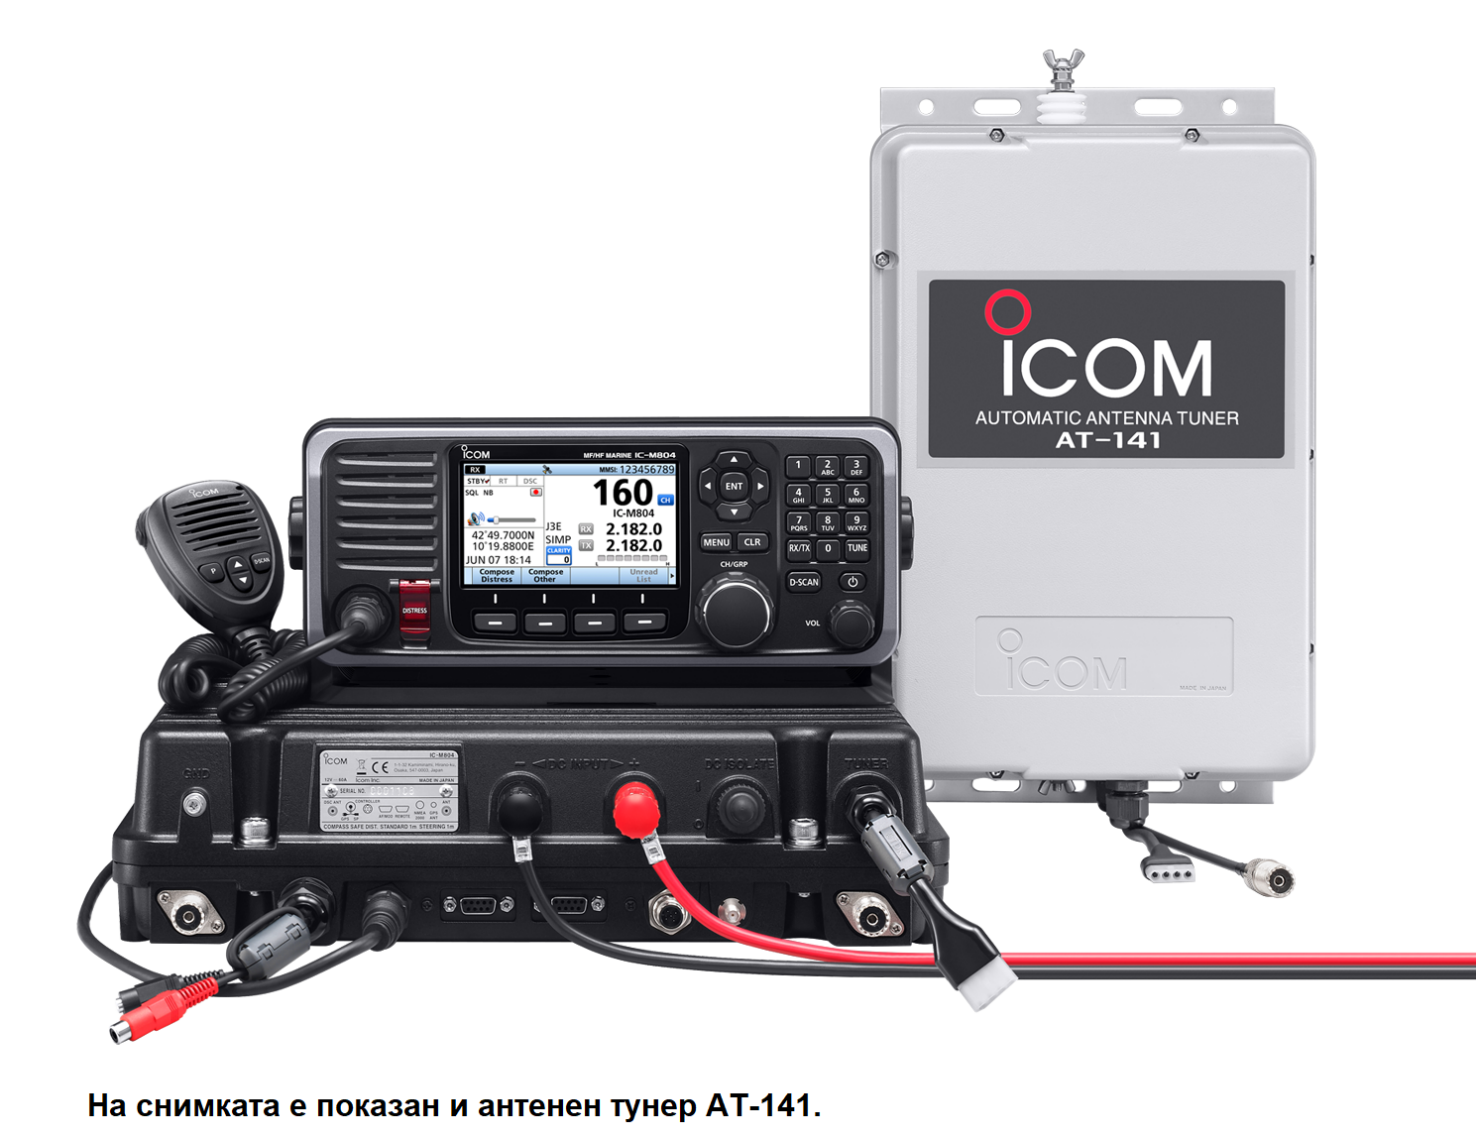 IC-M804 - Клас E DSC MF/HF SSB морска радиостанция | Integra-a